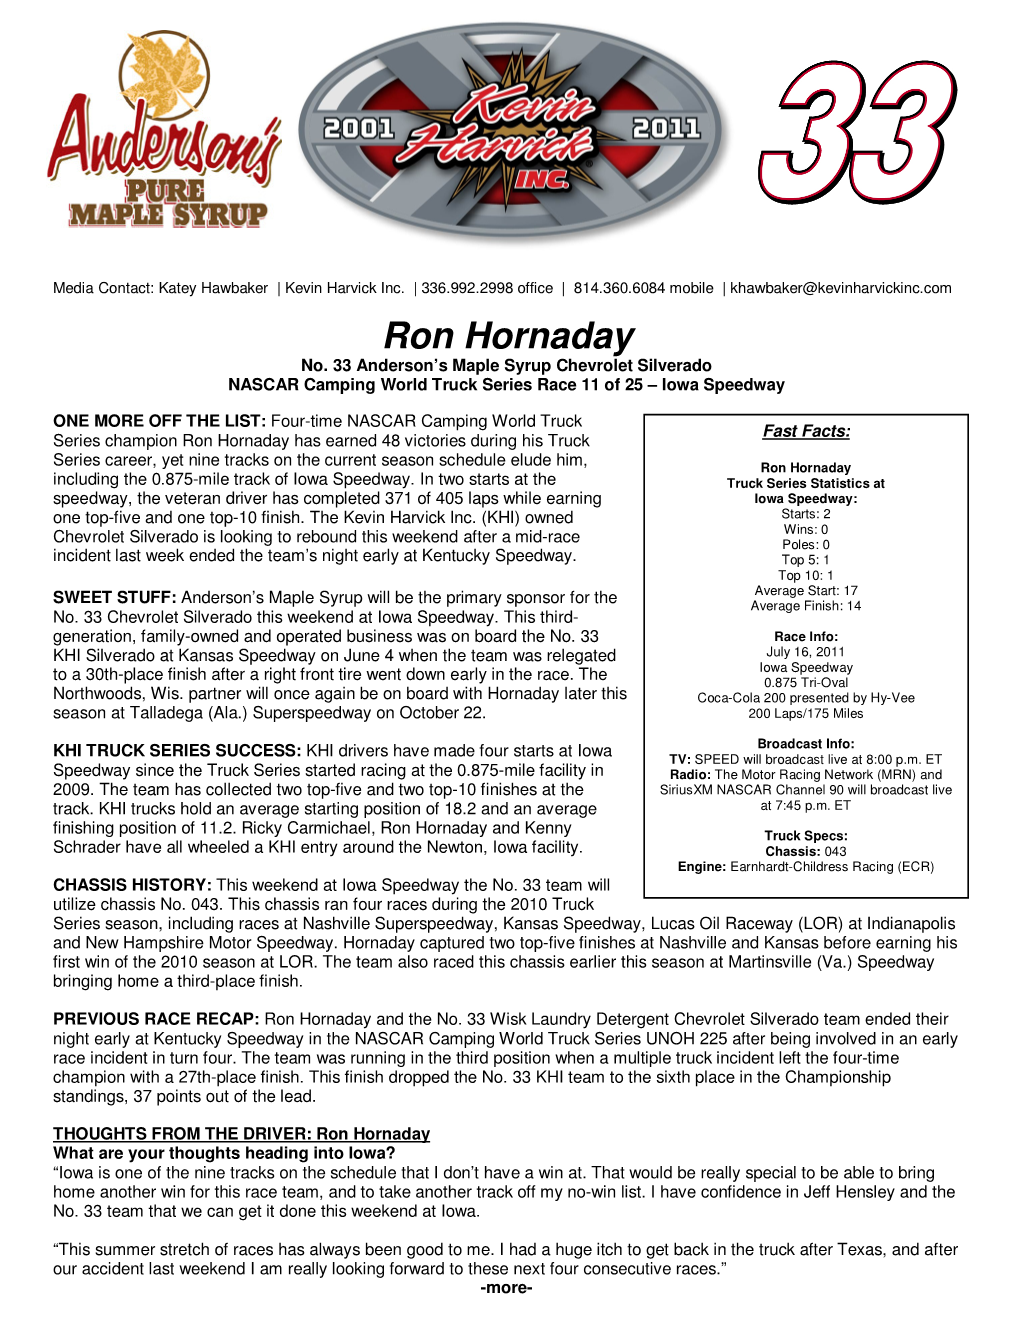 Ron Hornaday No